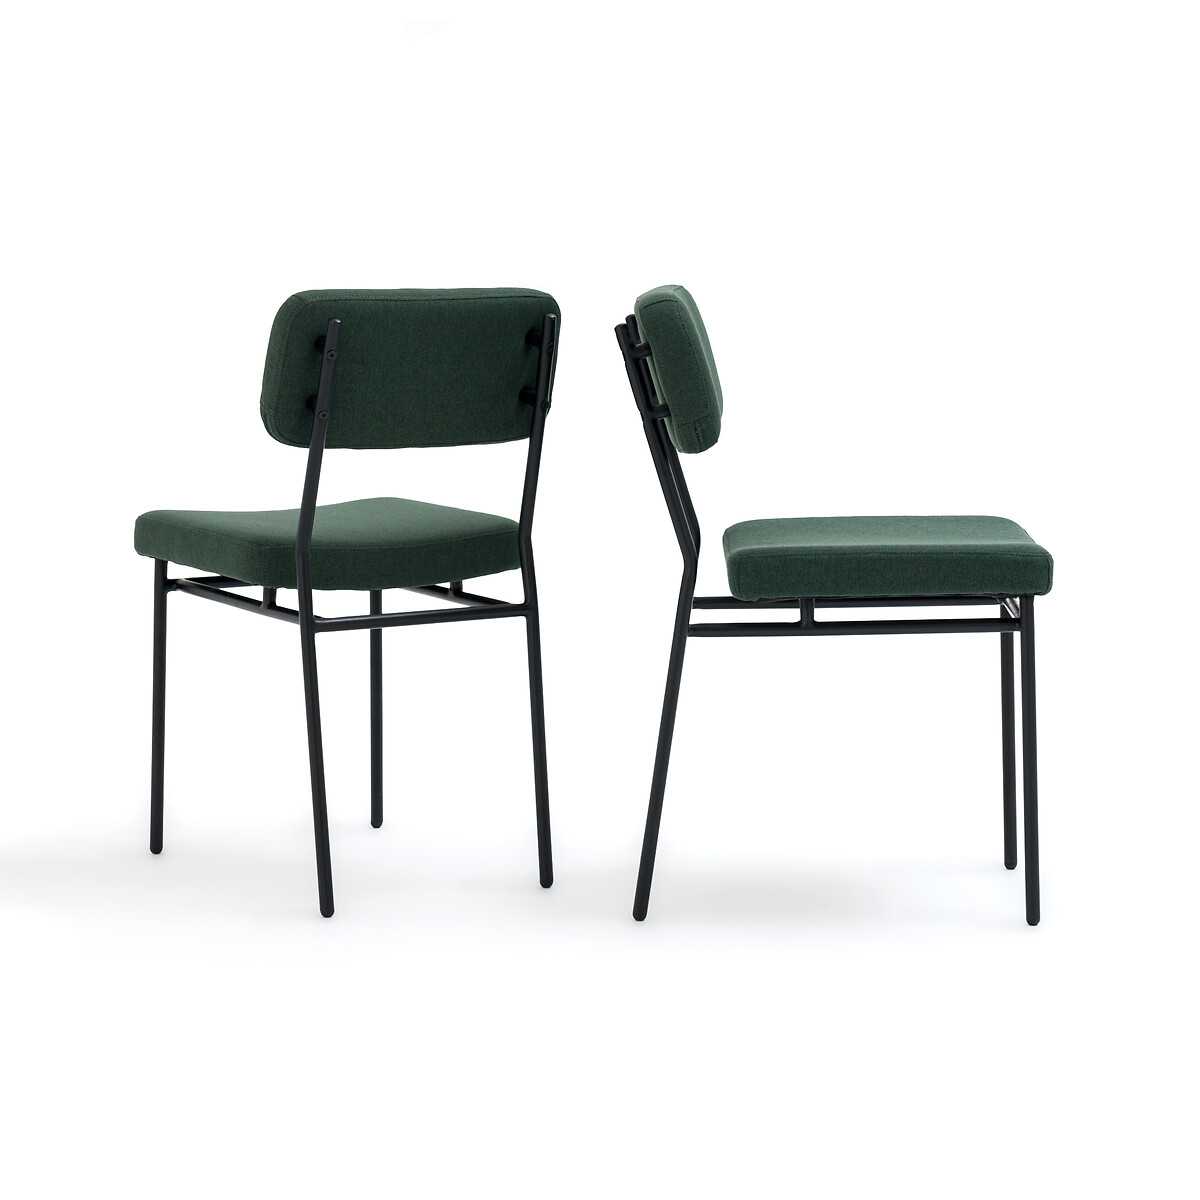 Комплект из 2-х стульев мягких LA REDOUTE INTERIEURS Joao единый размер зеленый - фото 2